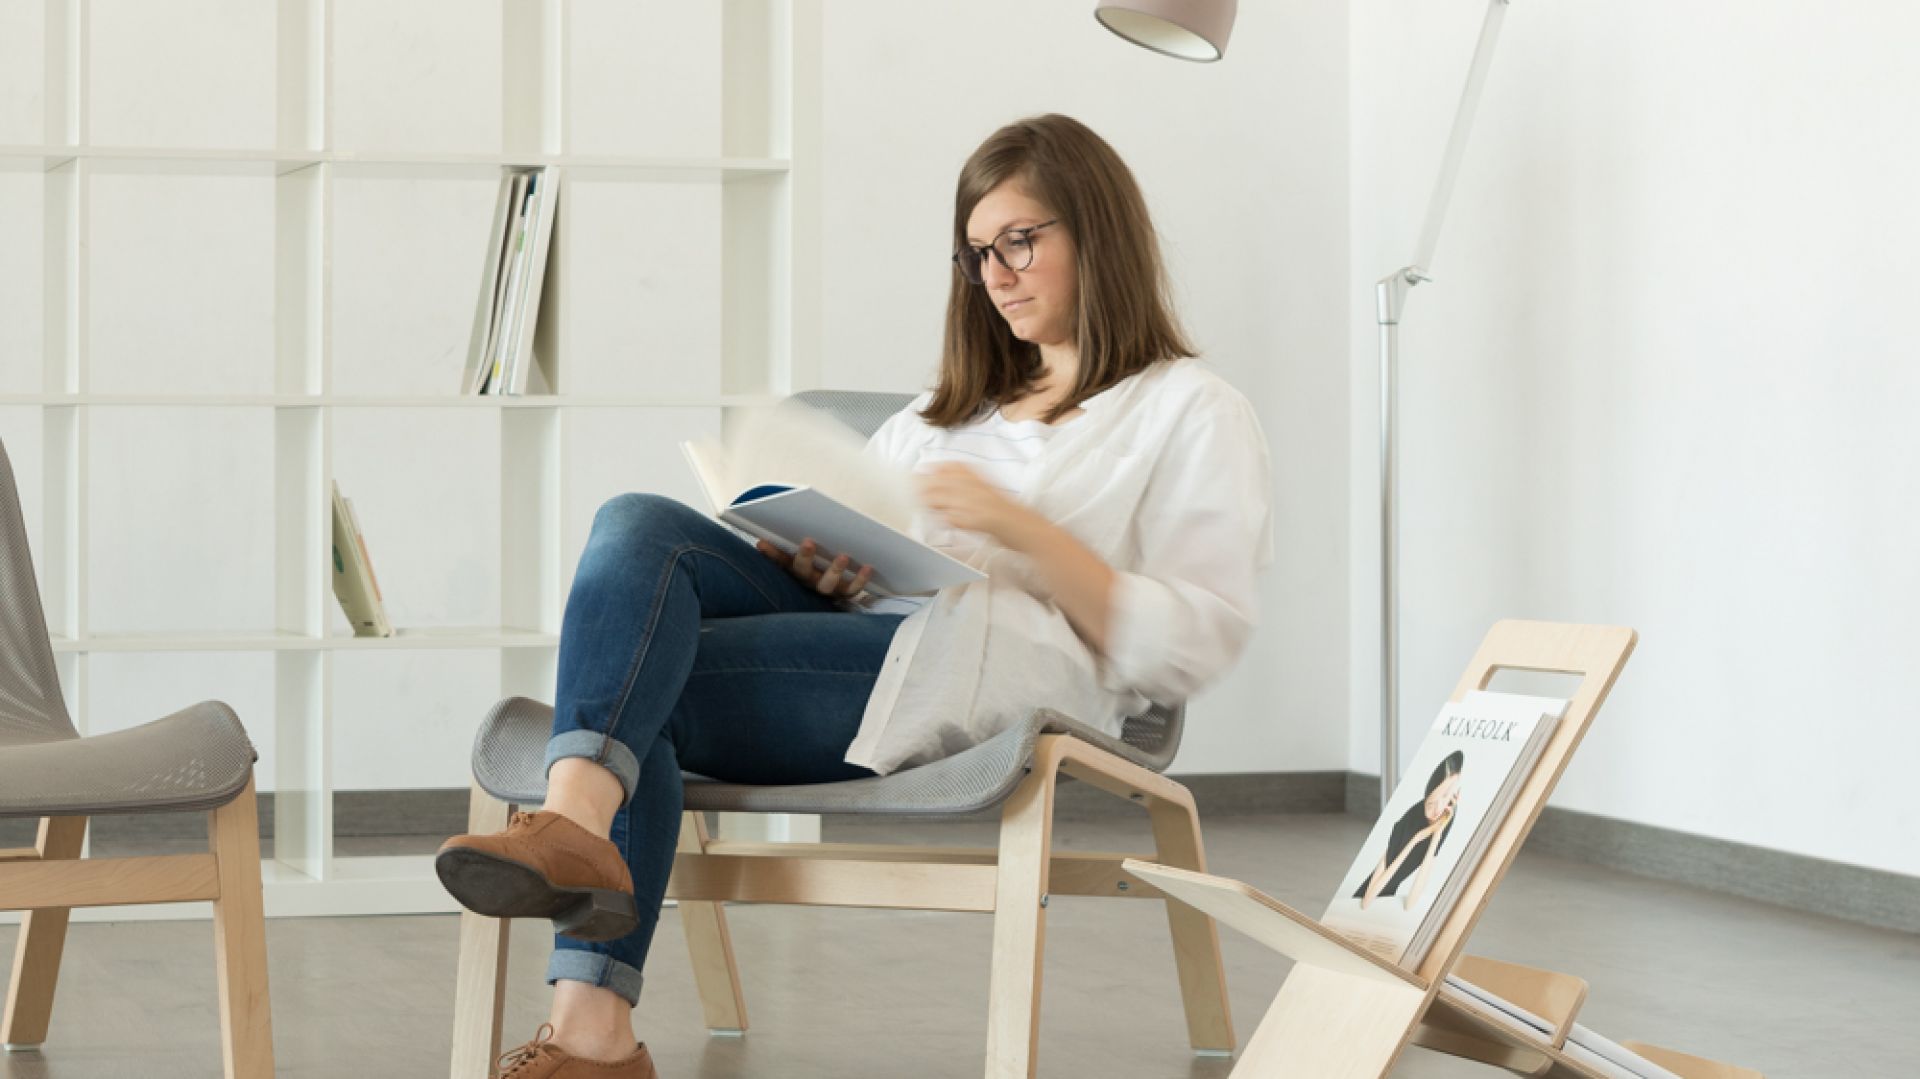 7 dodatków, które poprawią komfort korzystania z fotela i sofy